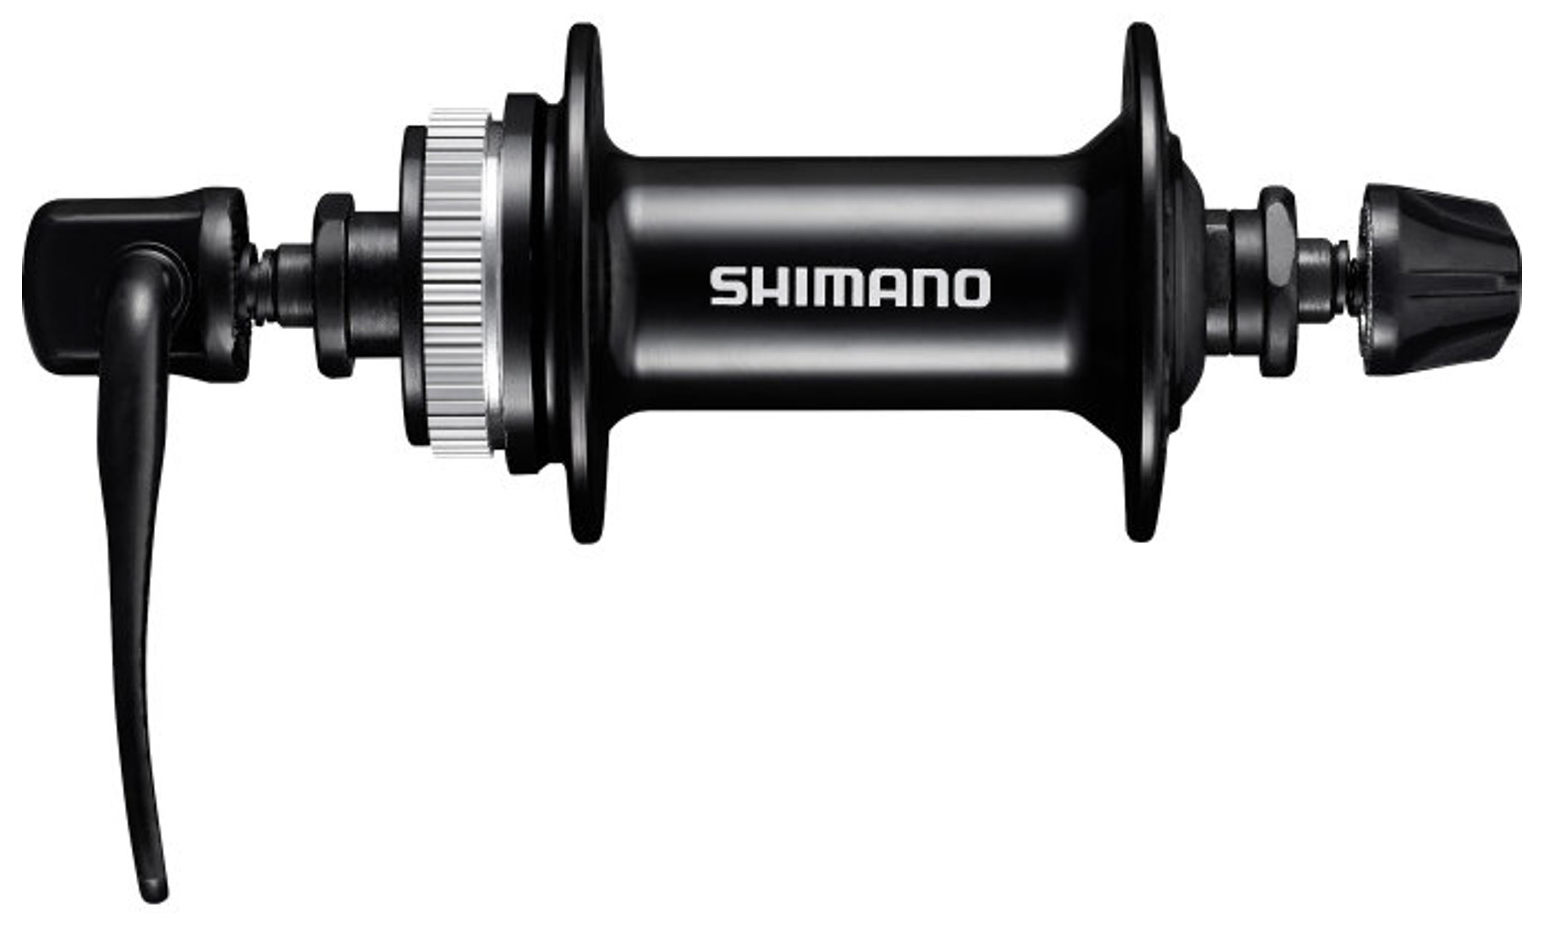  Втулка для велосипеда Shimano MT200, 32 отв (EHBMT200B)